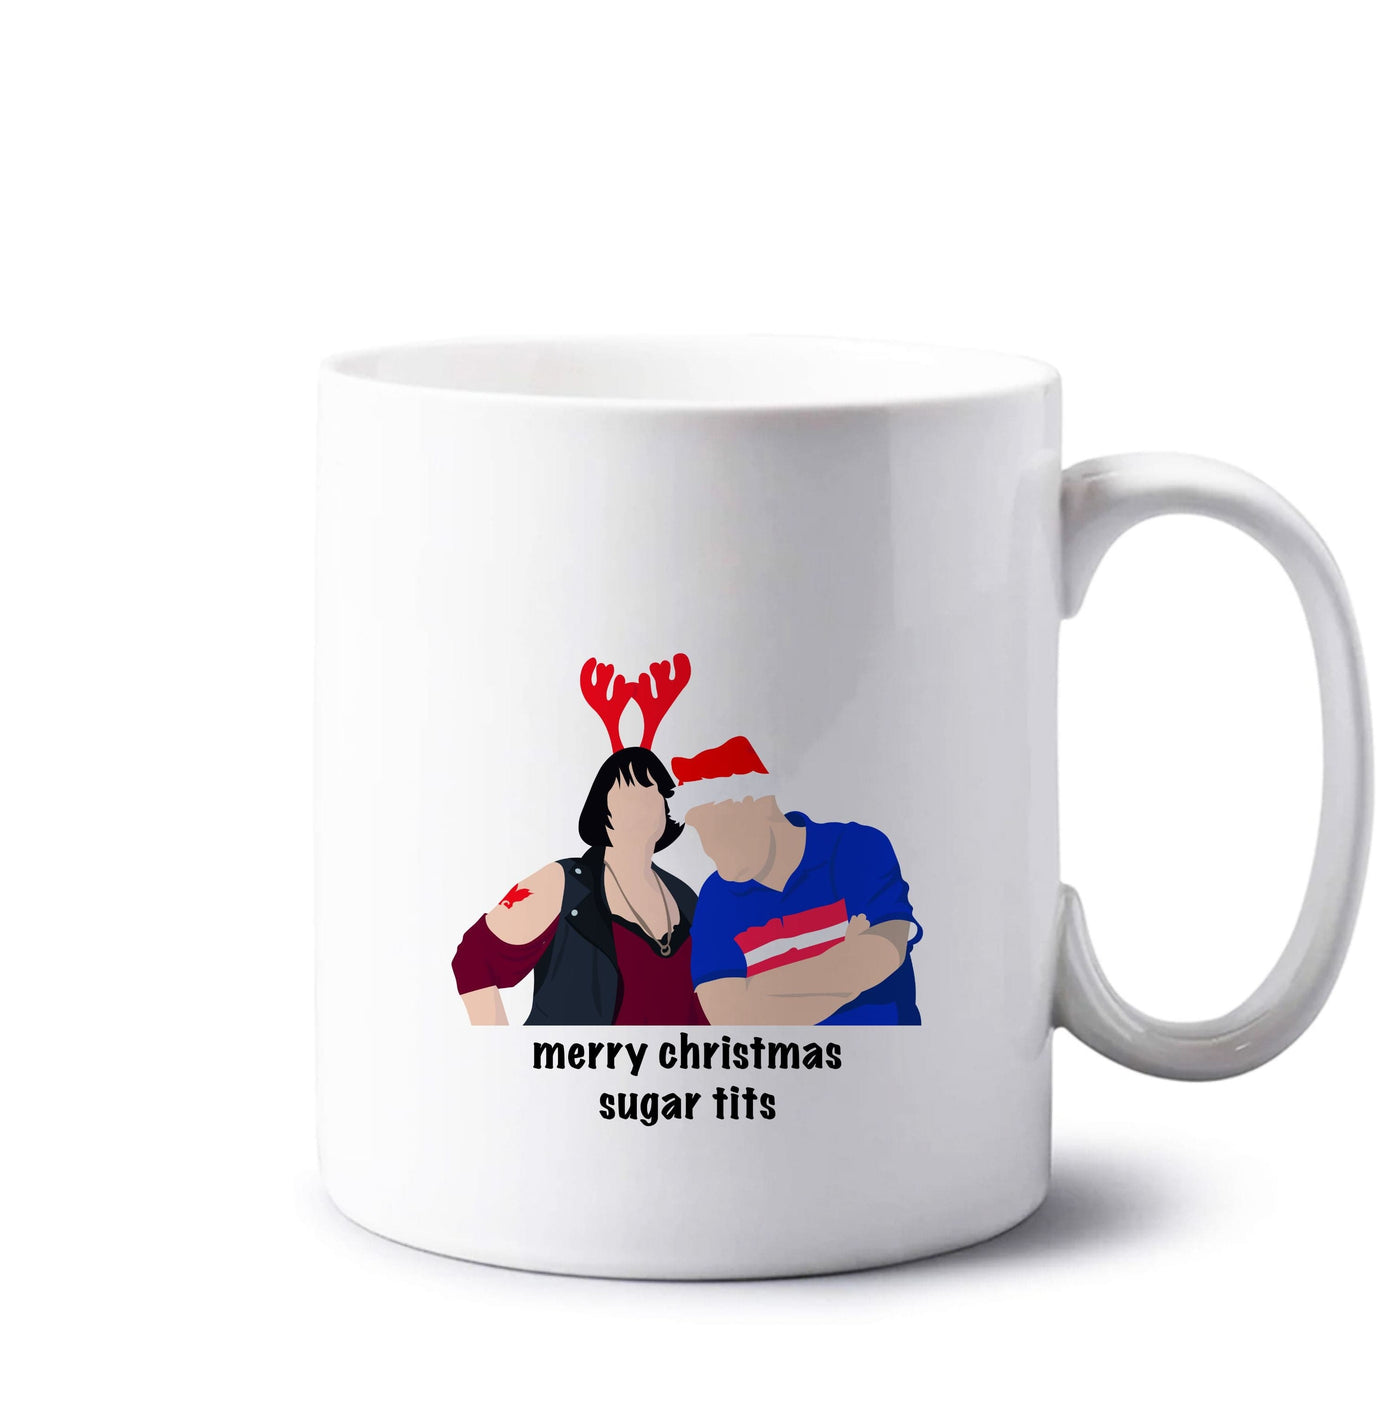 Merry Christmas Sugar Tits - Gavin And Stacey Mug